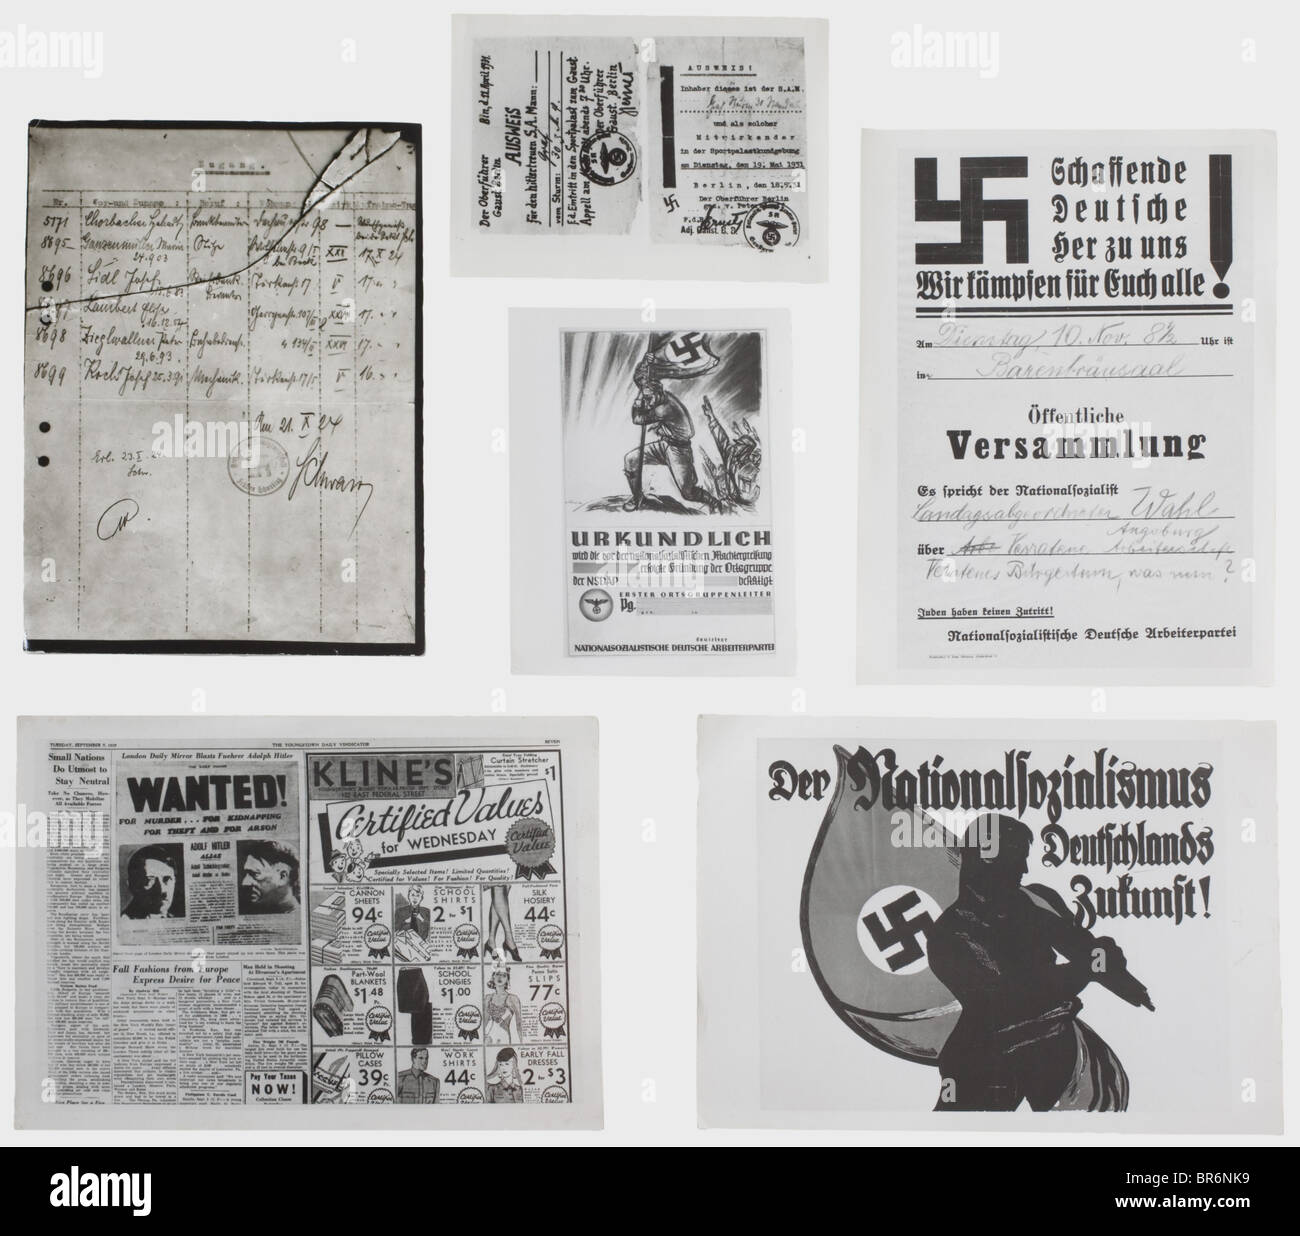 Mehr als 500 Fotografien aus dem Zentralarchiv der 1933., In Verschiedenen Größen, haben fast alle Bilder auf der Rückseite den Stempel des Zentralarchivs. Einige mit Stempeln der Foto-Korrespondenten, einige mit zusätzlichen Bemerkungen. Sehr interessante Fotos, darunter einer der Hitlers DAP-Mitgliedskarten, unzählige Dokumente wie Mitgliedskarten verschiedener Organisationen (unter anderem Noske-ID), Briefe an Hitler, Briefe, die in Prozessen verwendet wurden, "streng vertrauliche"-Briefe der Nazi-Partei, auch Plakate der Nazi-Partei (DAP), der Kommunistischen Partei und anderer Parteien aus den 1920er Jahren und EAR, Stockfoto